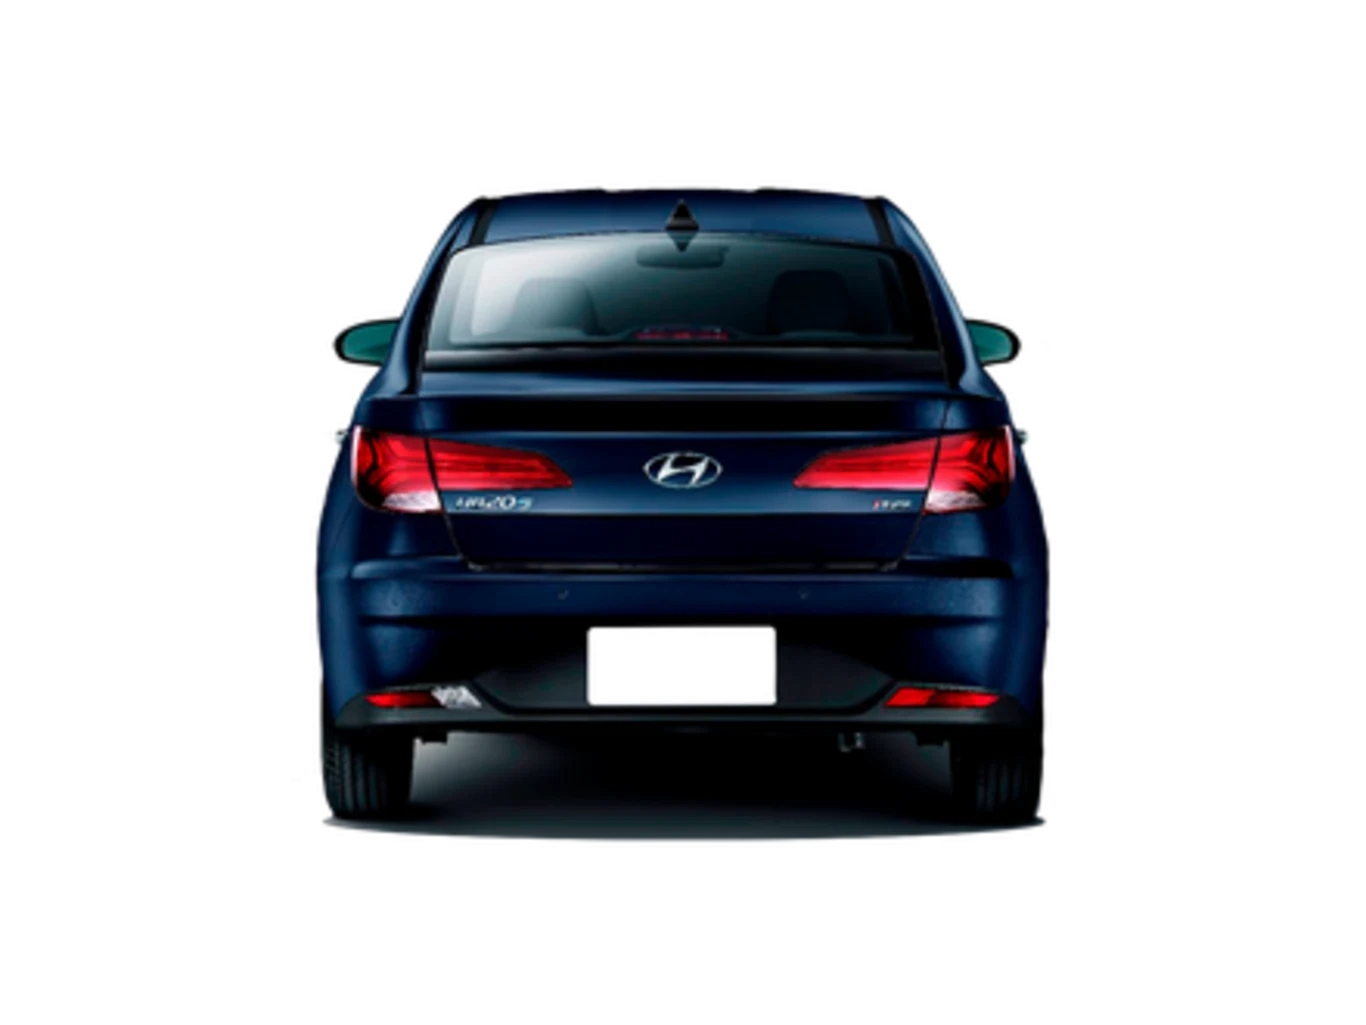 Hyundai HB20S Vision 1.0